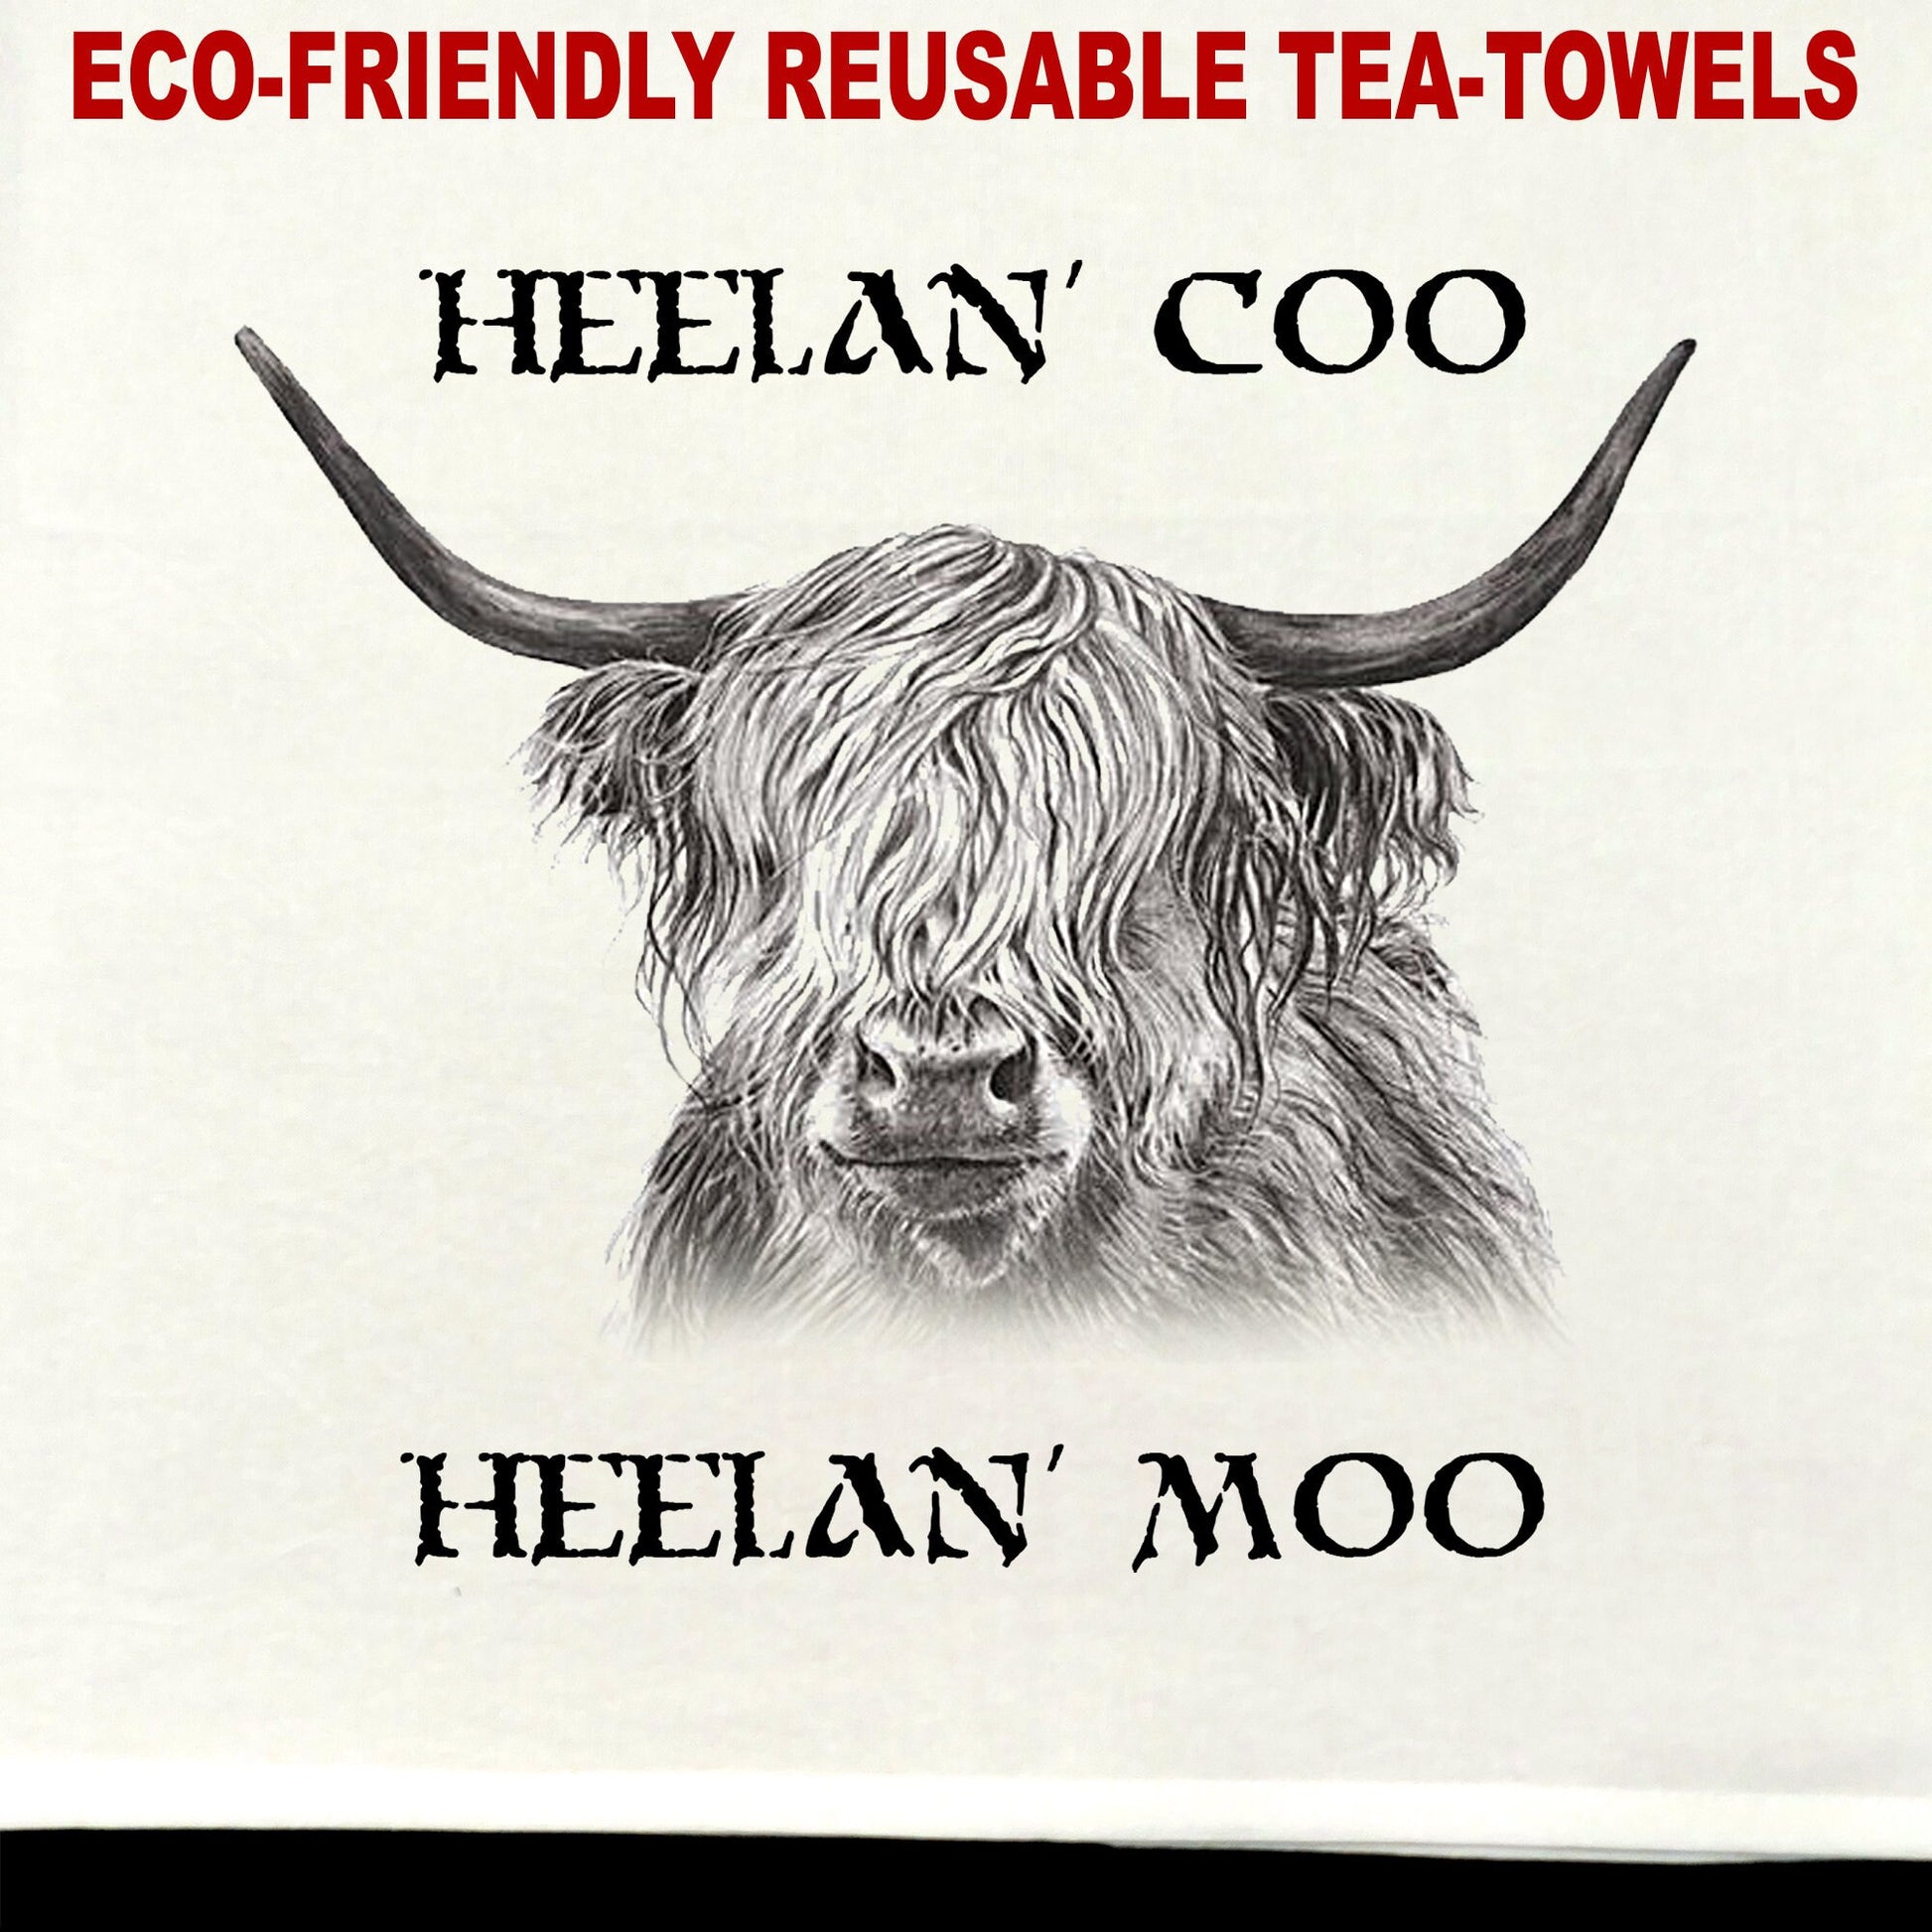 Heelan Coo Tea Towel / tea towel / dish towel / hand towel / reusable wipe / kitchen gift / kitchen deco